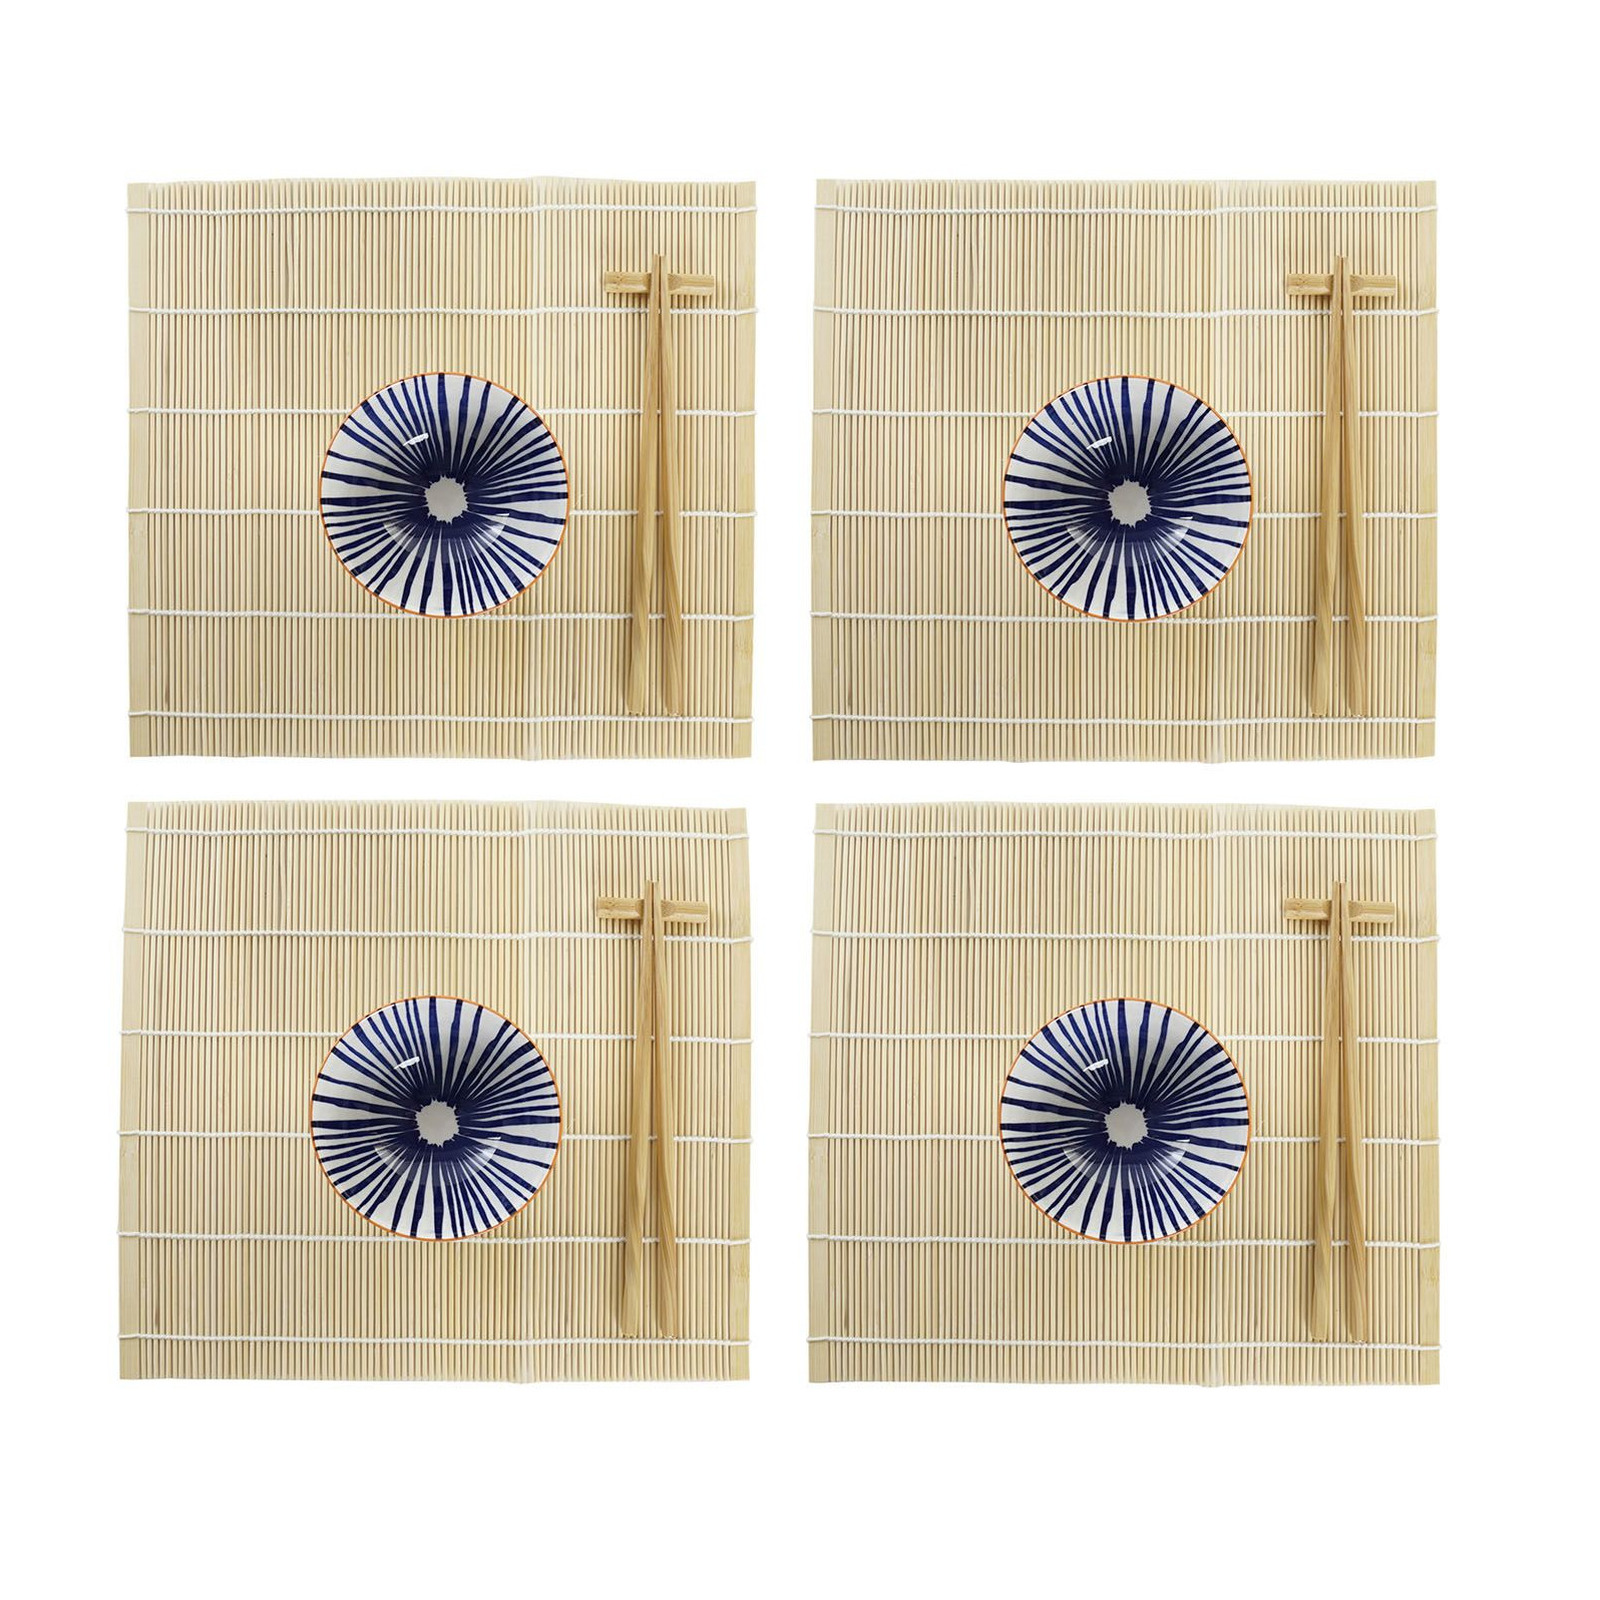 Items 16-delige sushi serveer set aardewerk voor 4 personen blauw/wit -